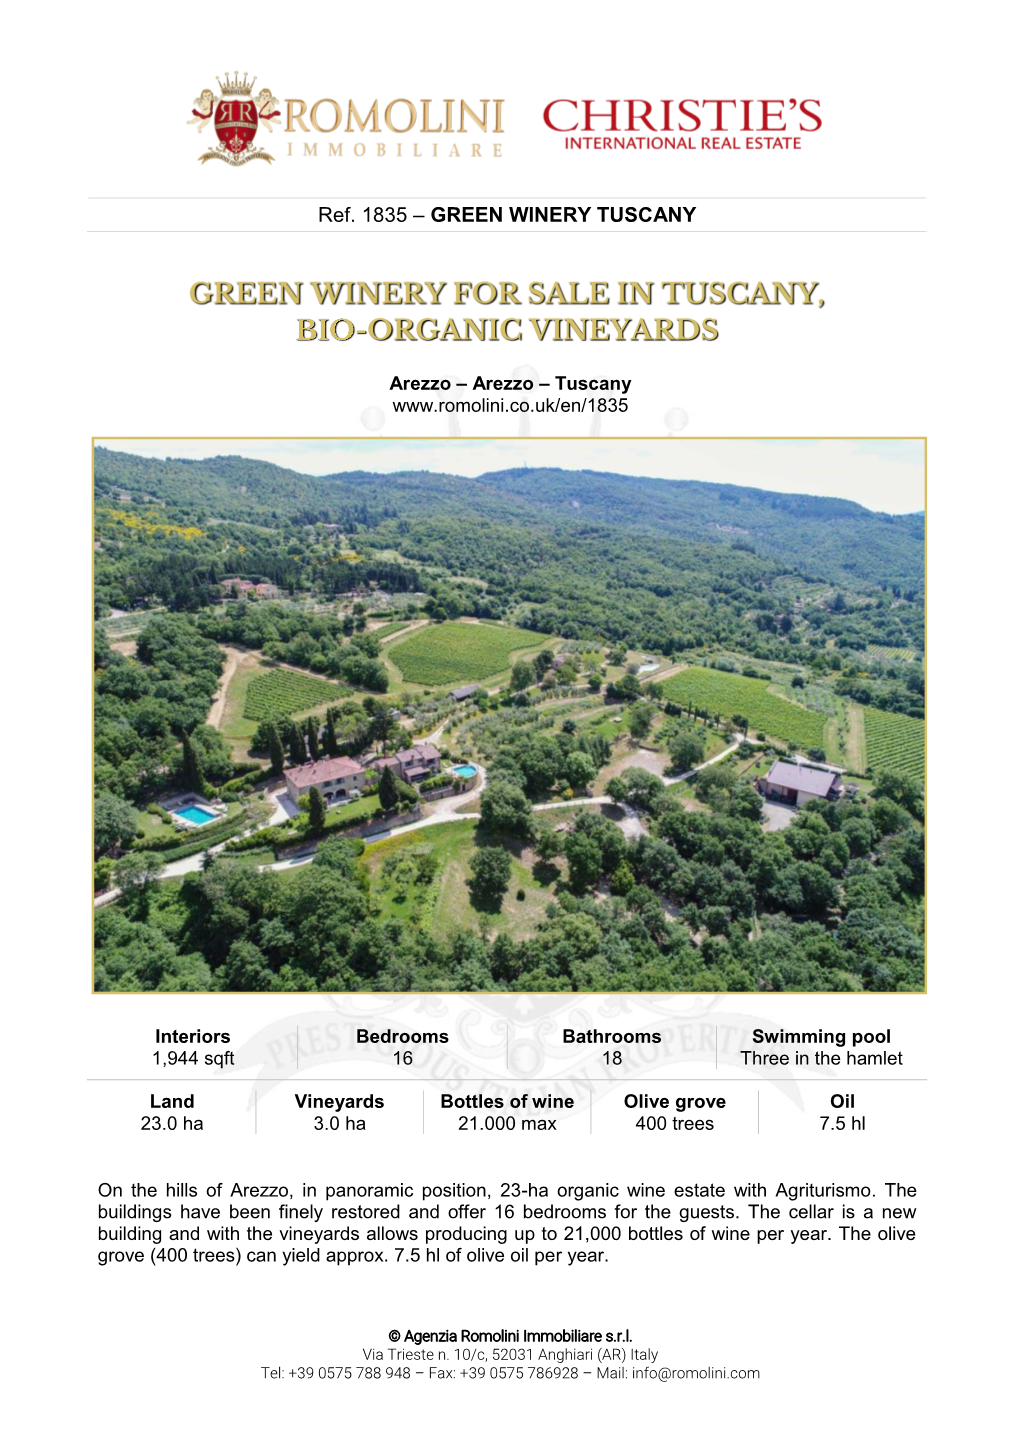 Green Winery Tuscany